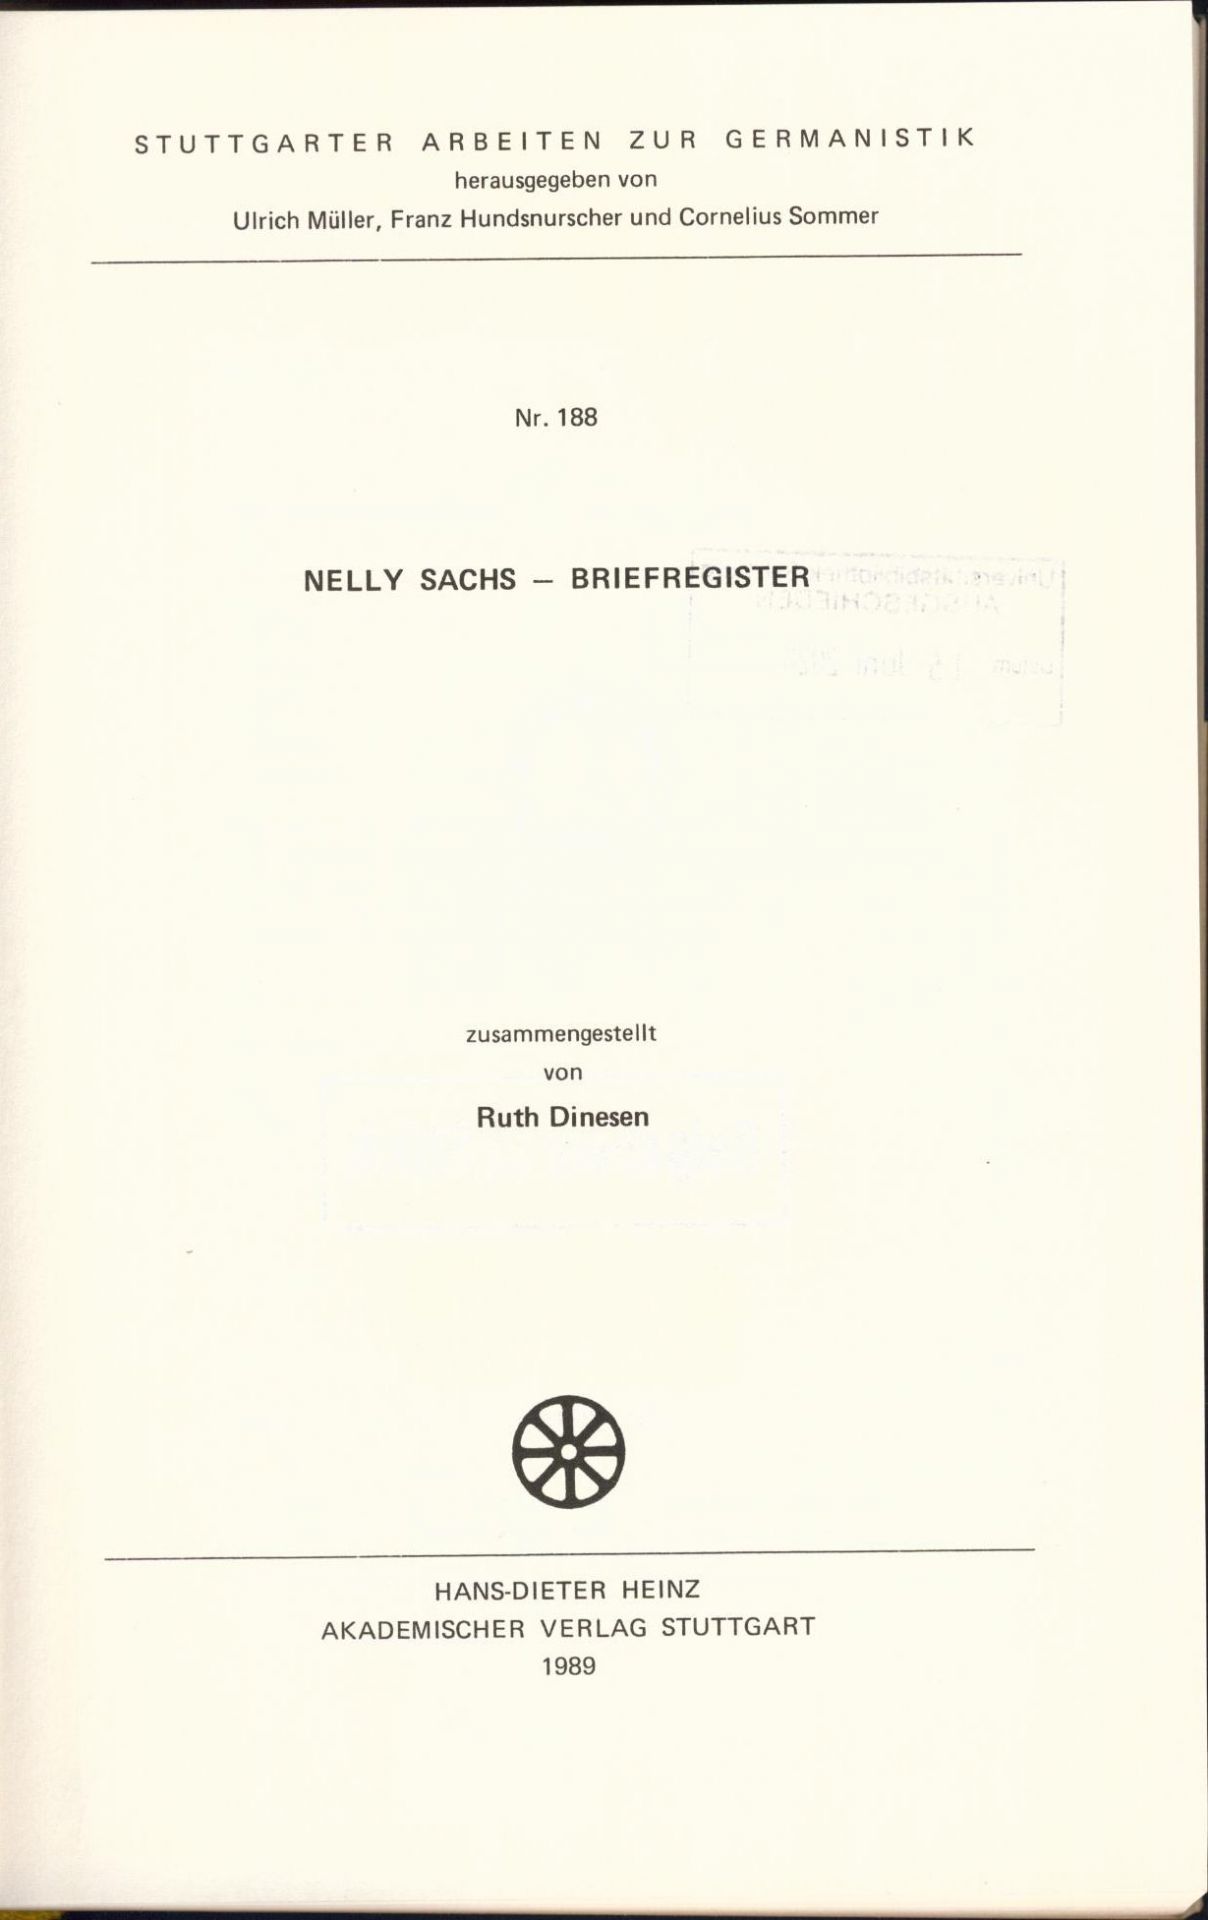 Nelly Sachs - Briefregister 3454 Briefe auf Mikrofiches - Müller, Ulrich, Franz Hundsnurscher und Cornelius Sommer